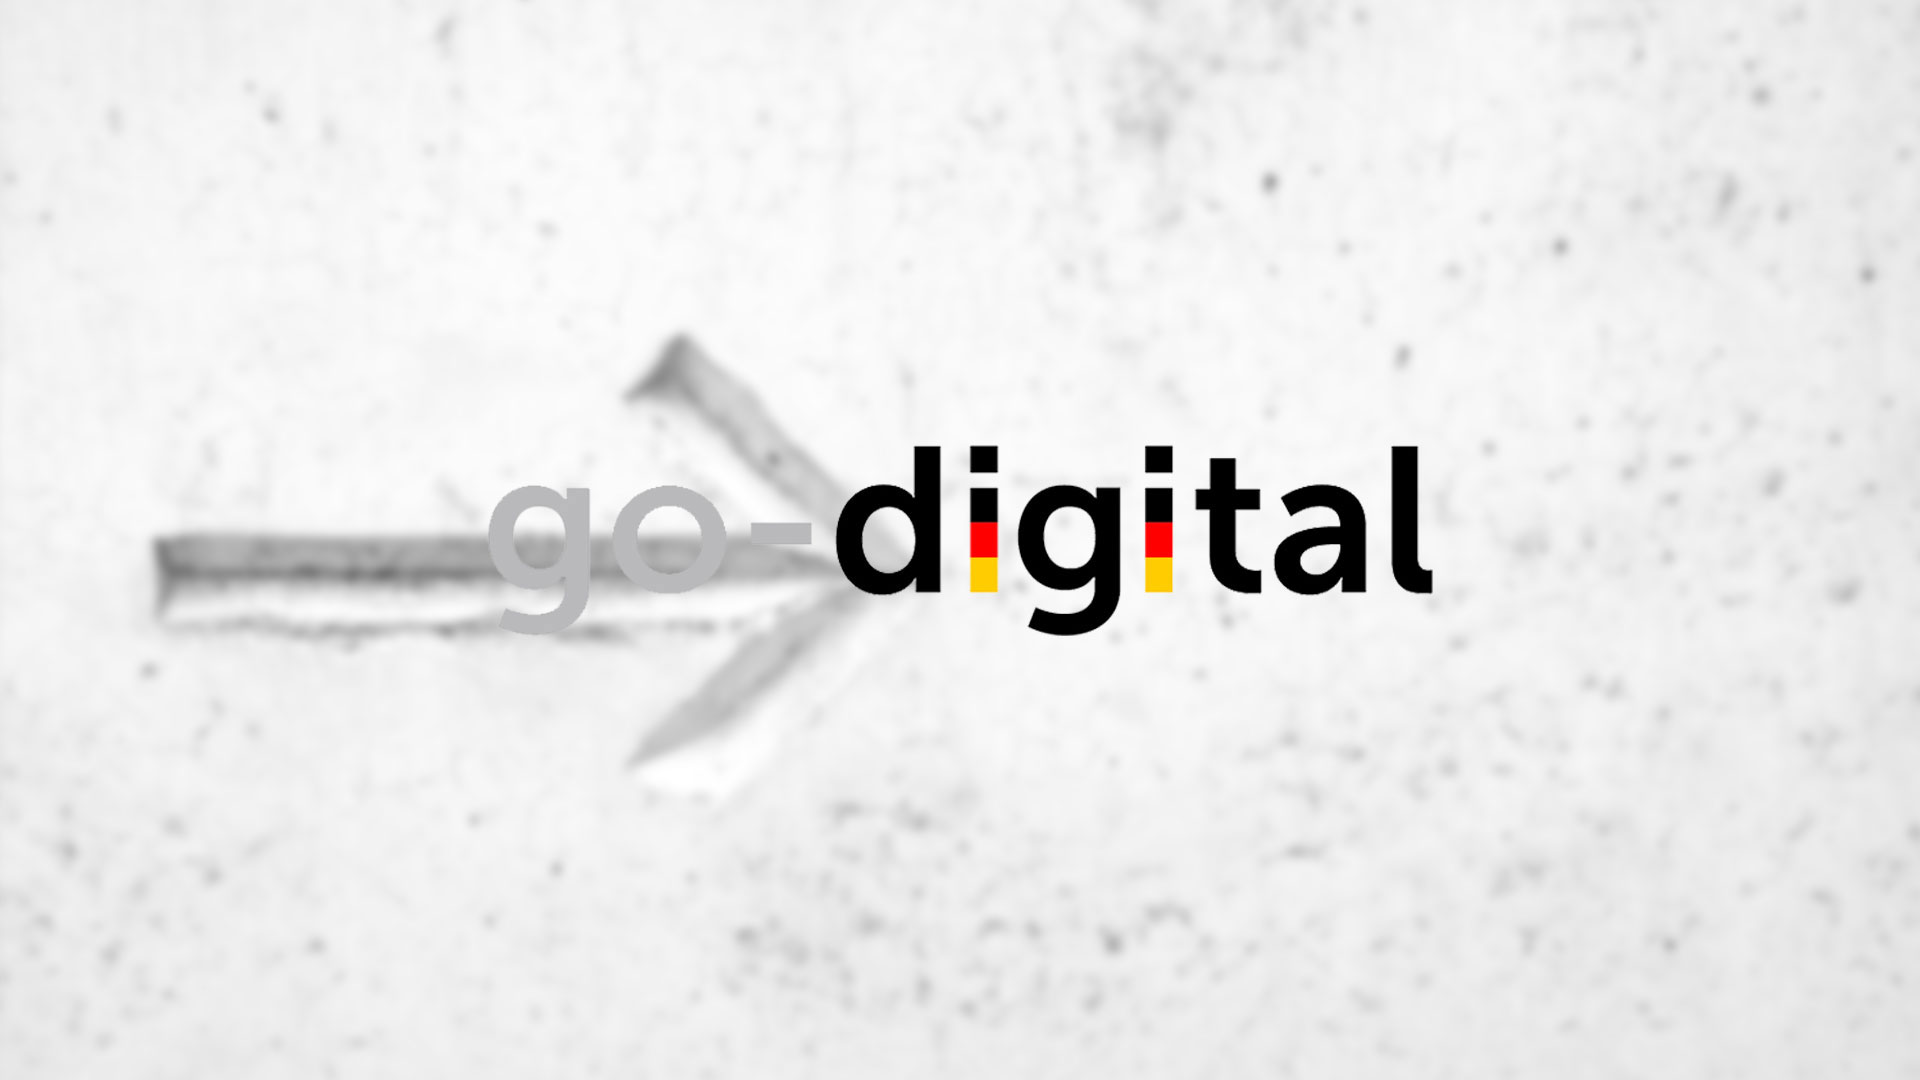 Die J&J Ideenschmiede ist zertifiziert für go-digital, die Förderung in Deutschland für Digitalisierung